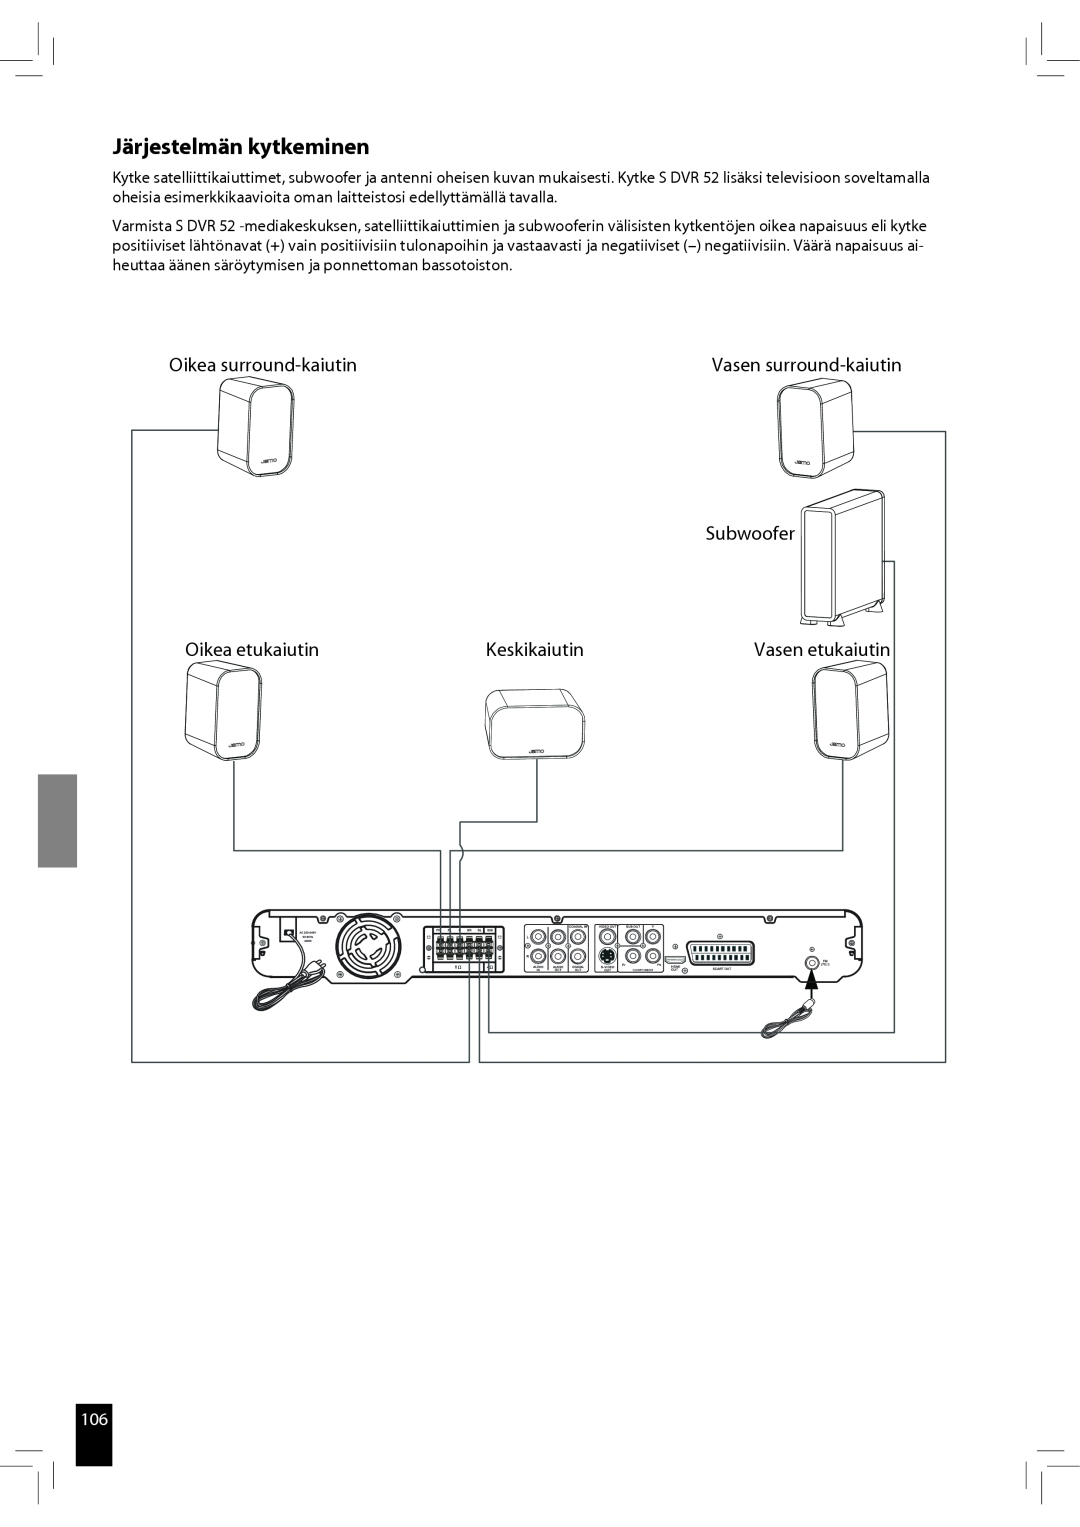 JAMO S 502 manual Järjestelmän kytkeminen, Oikea surround-kaiutin, Oikea etukaiutin, Keskikaiutin, Vasen surround-kaiutin 